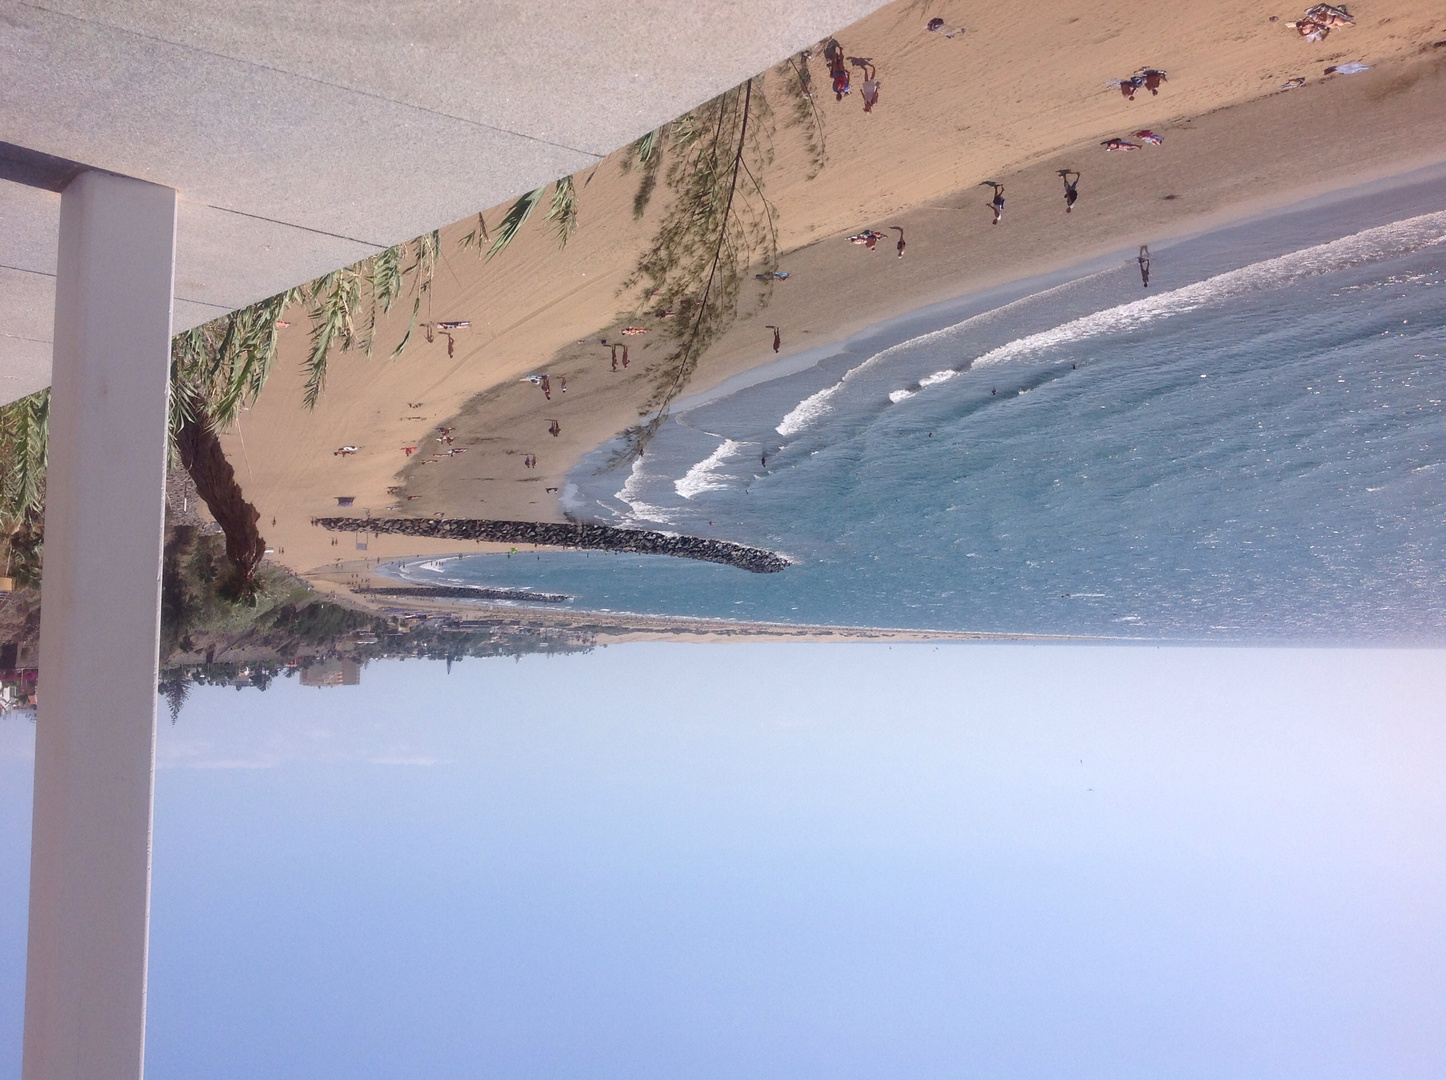 Blick auf playa del ingels und maspalomas de Gran canaria